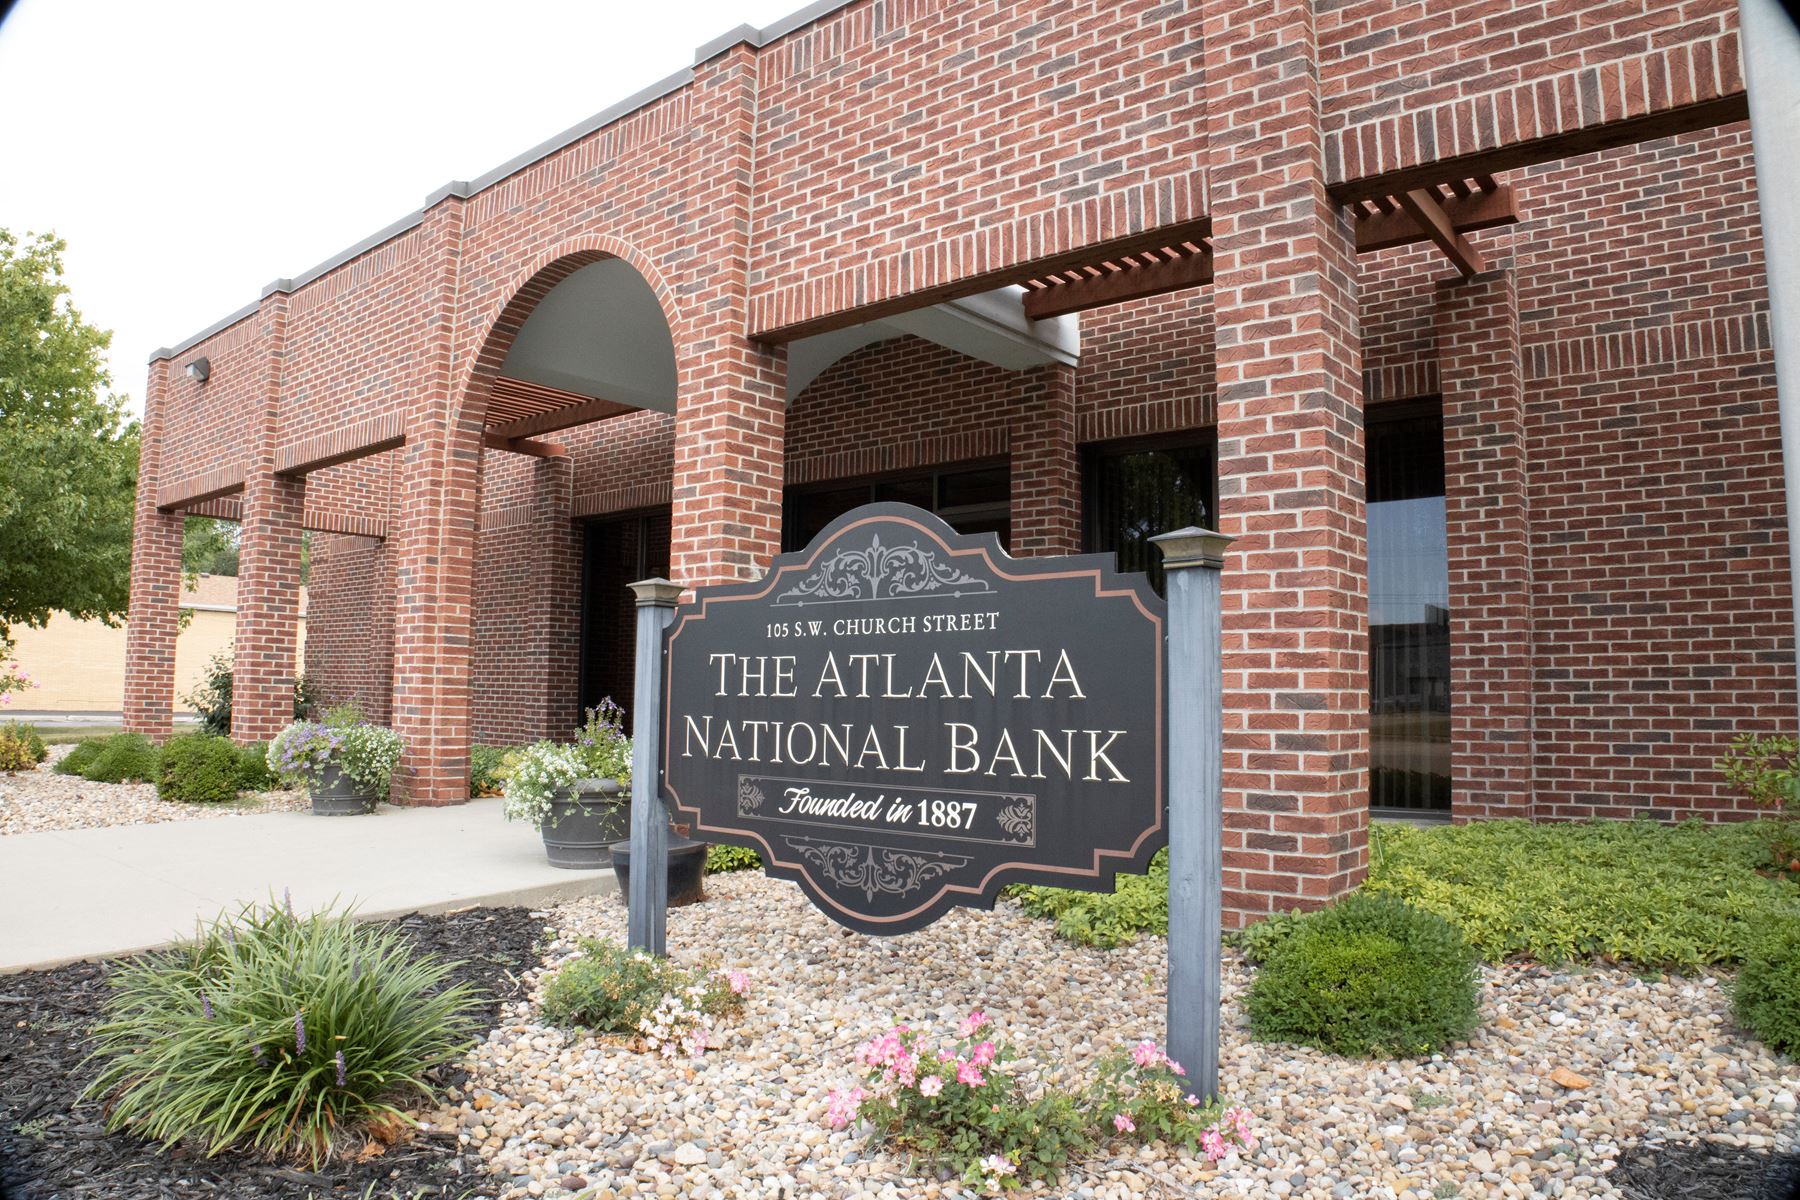 The Atlanta National Bank